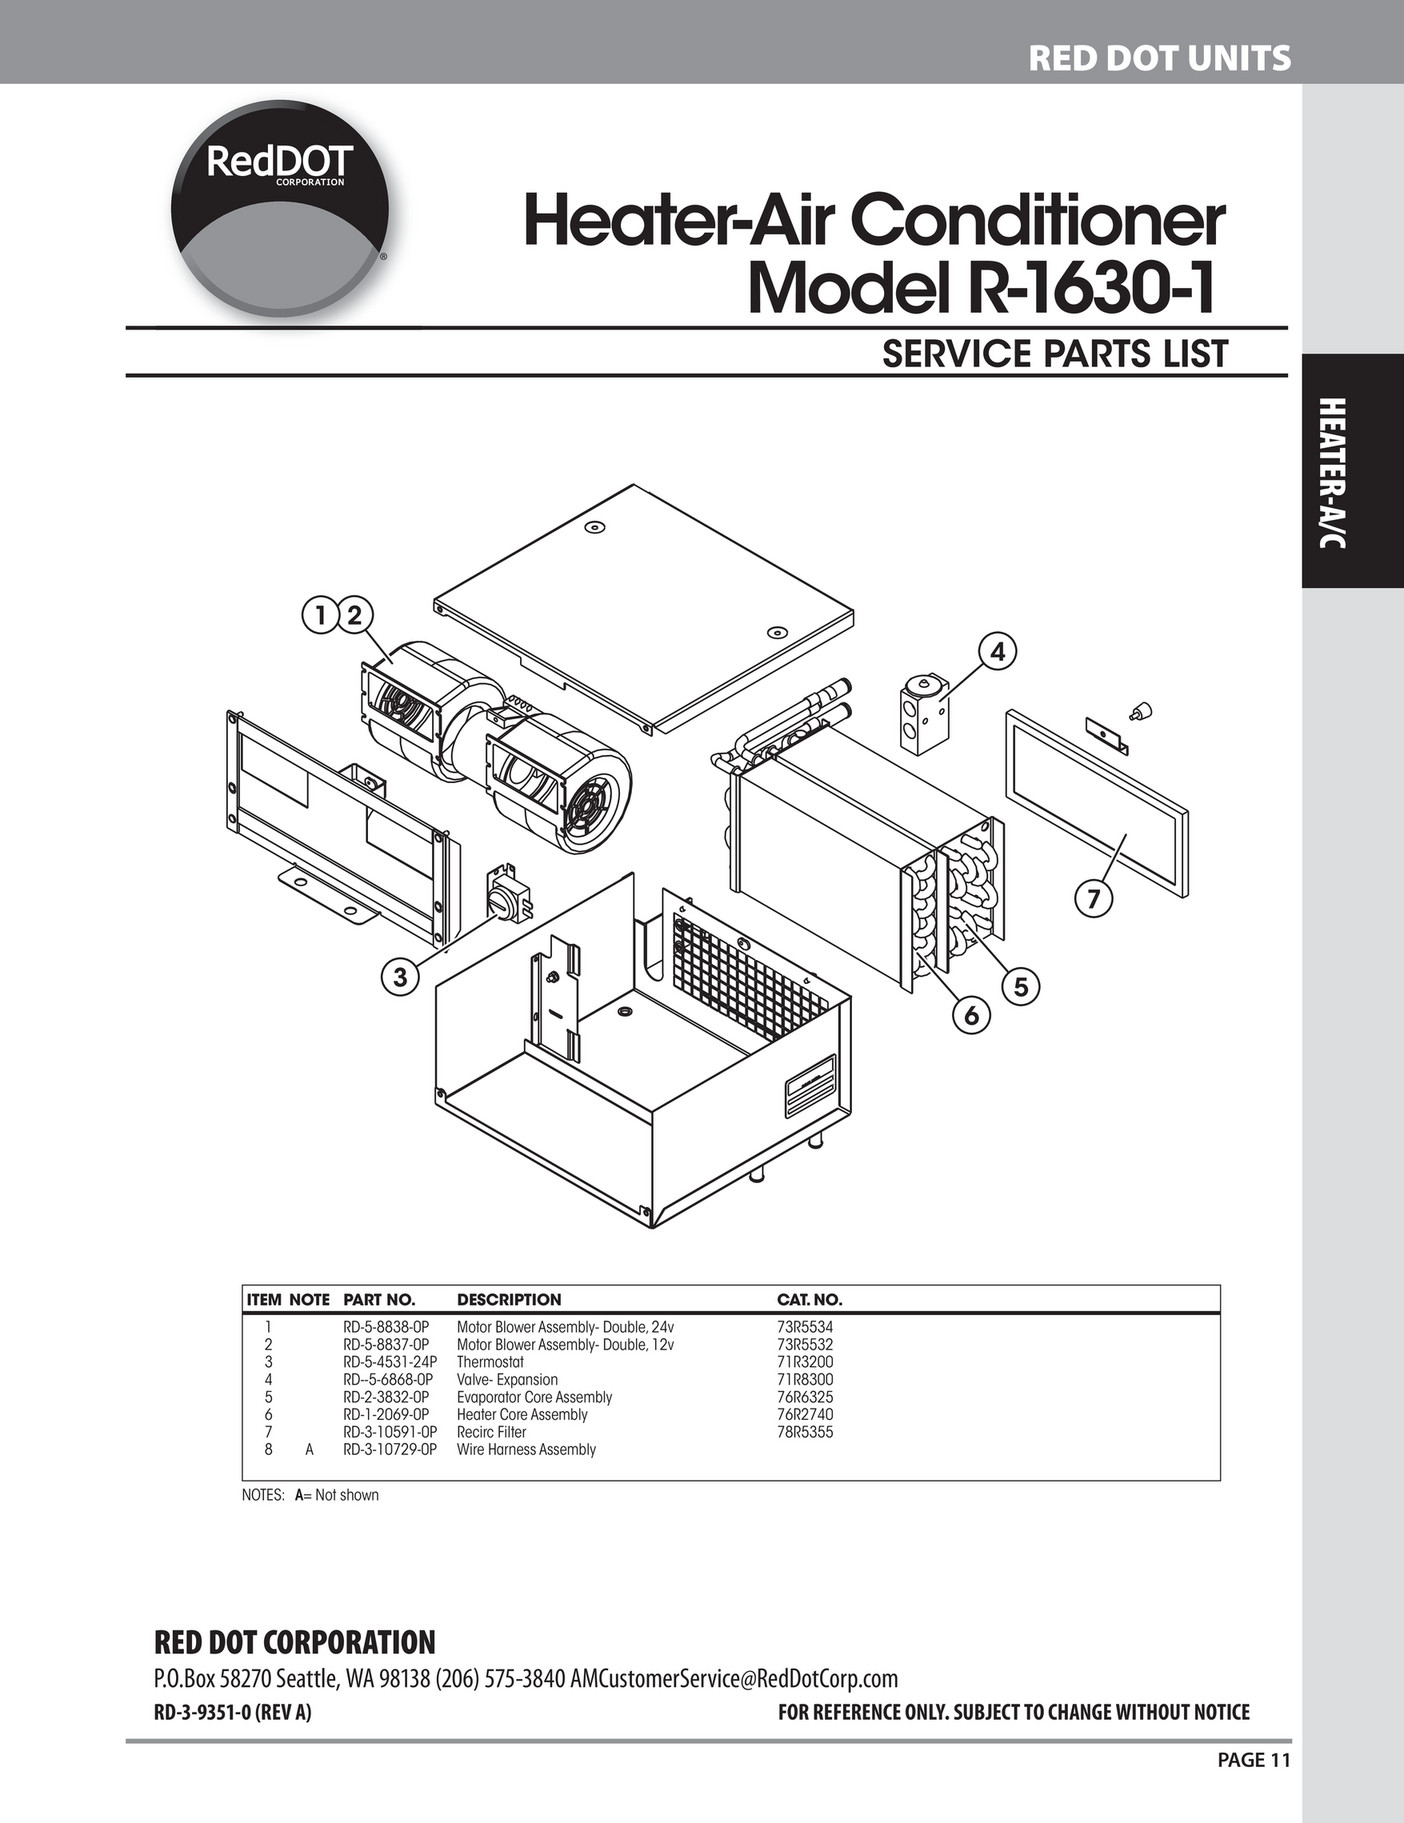 Ashdown-Ingram - 201920 RedDOT Catalogue - Page 1  Red Dot Heater Wiring Diagram    Publitas